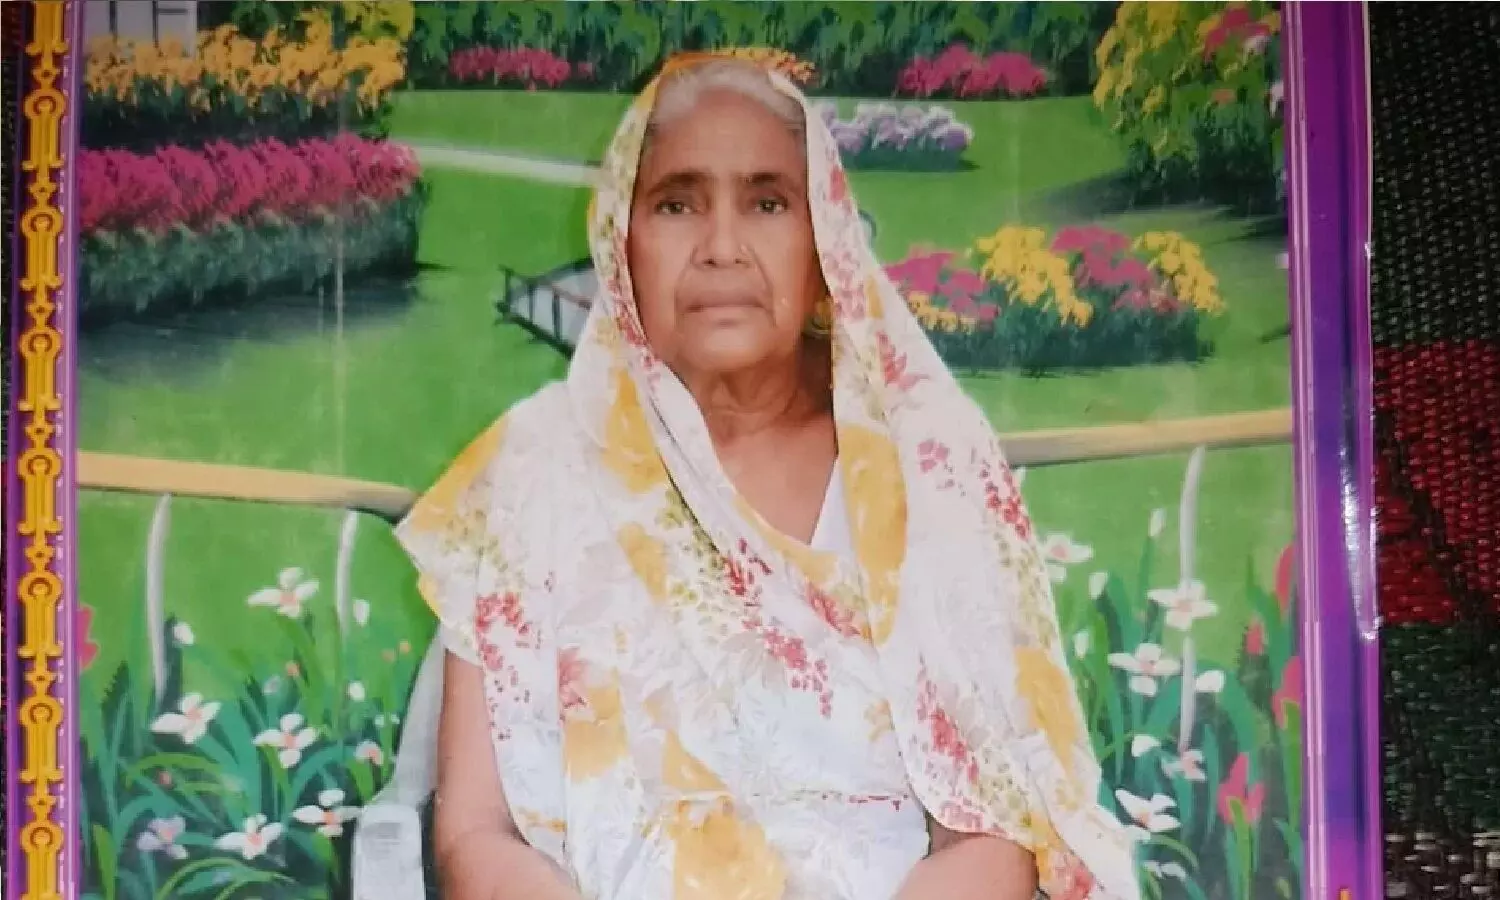 फिरोजाबाद: श्मशान ले जाते वक़्त जिंदा हो गई 81 वर्षीय महिला, डॉक्टर्स ने मृत घोषित कर दिया था